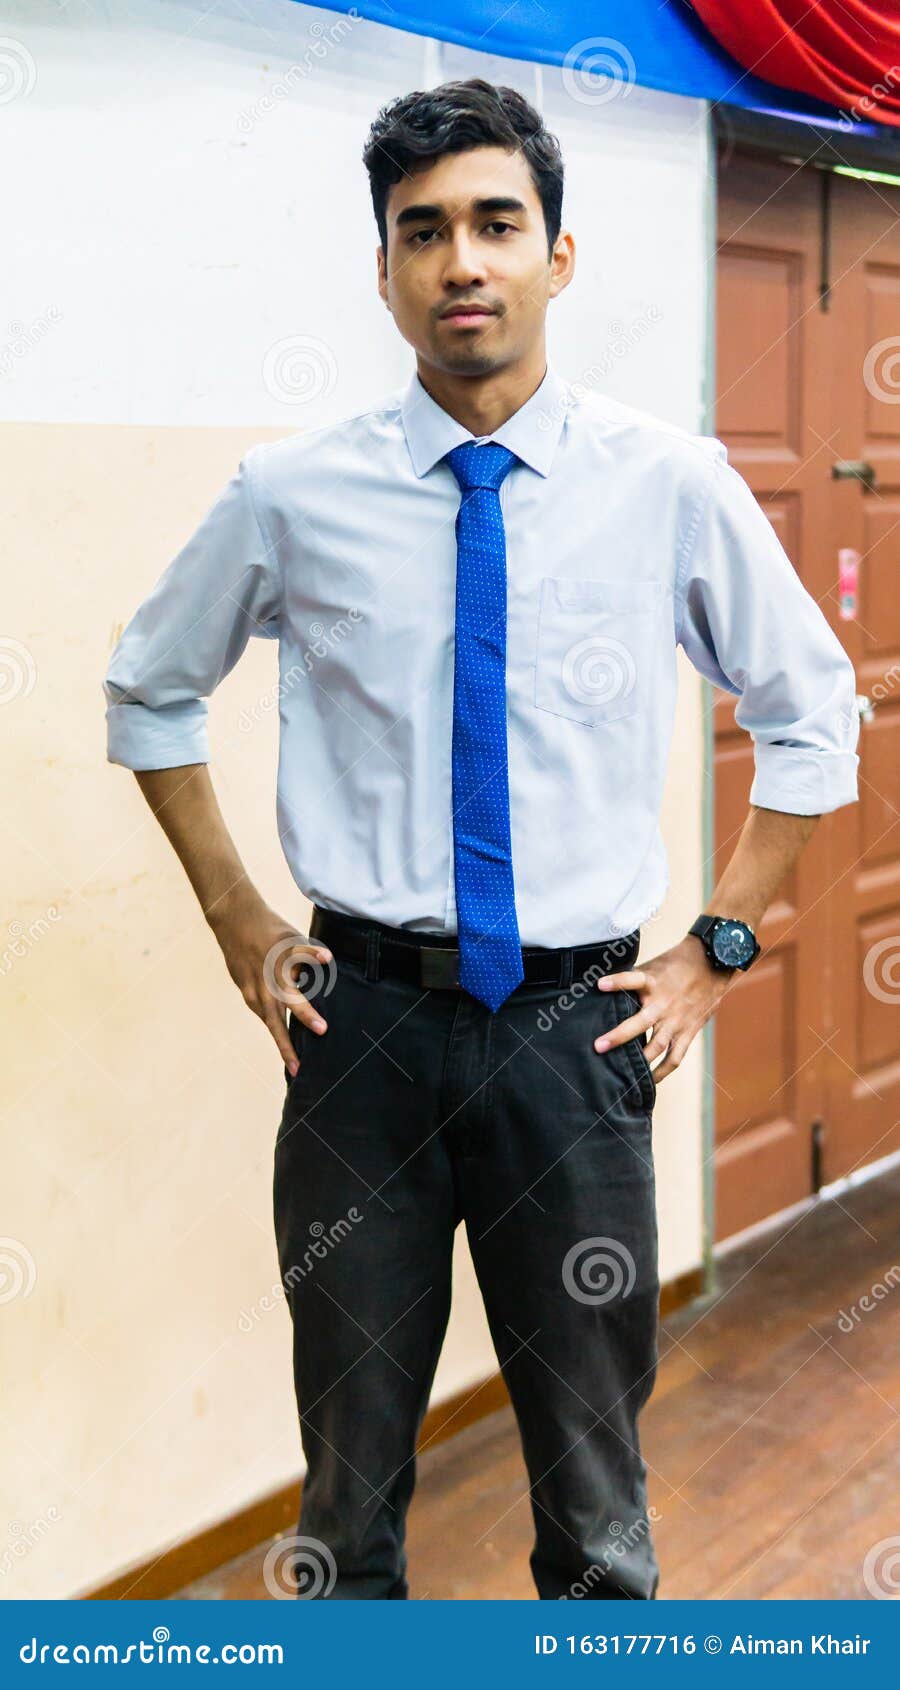 Retrato De Un Hombre De Negocios Alto De Asia Lleva Una Camisa Blanca, Corbata Azul Y Reloj De Mano Foto de archivo - Imagen formal, confidente: 163177716